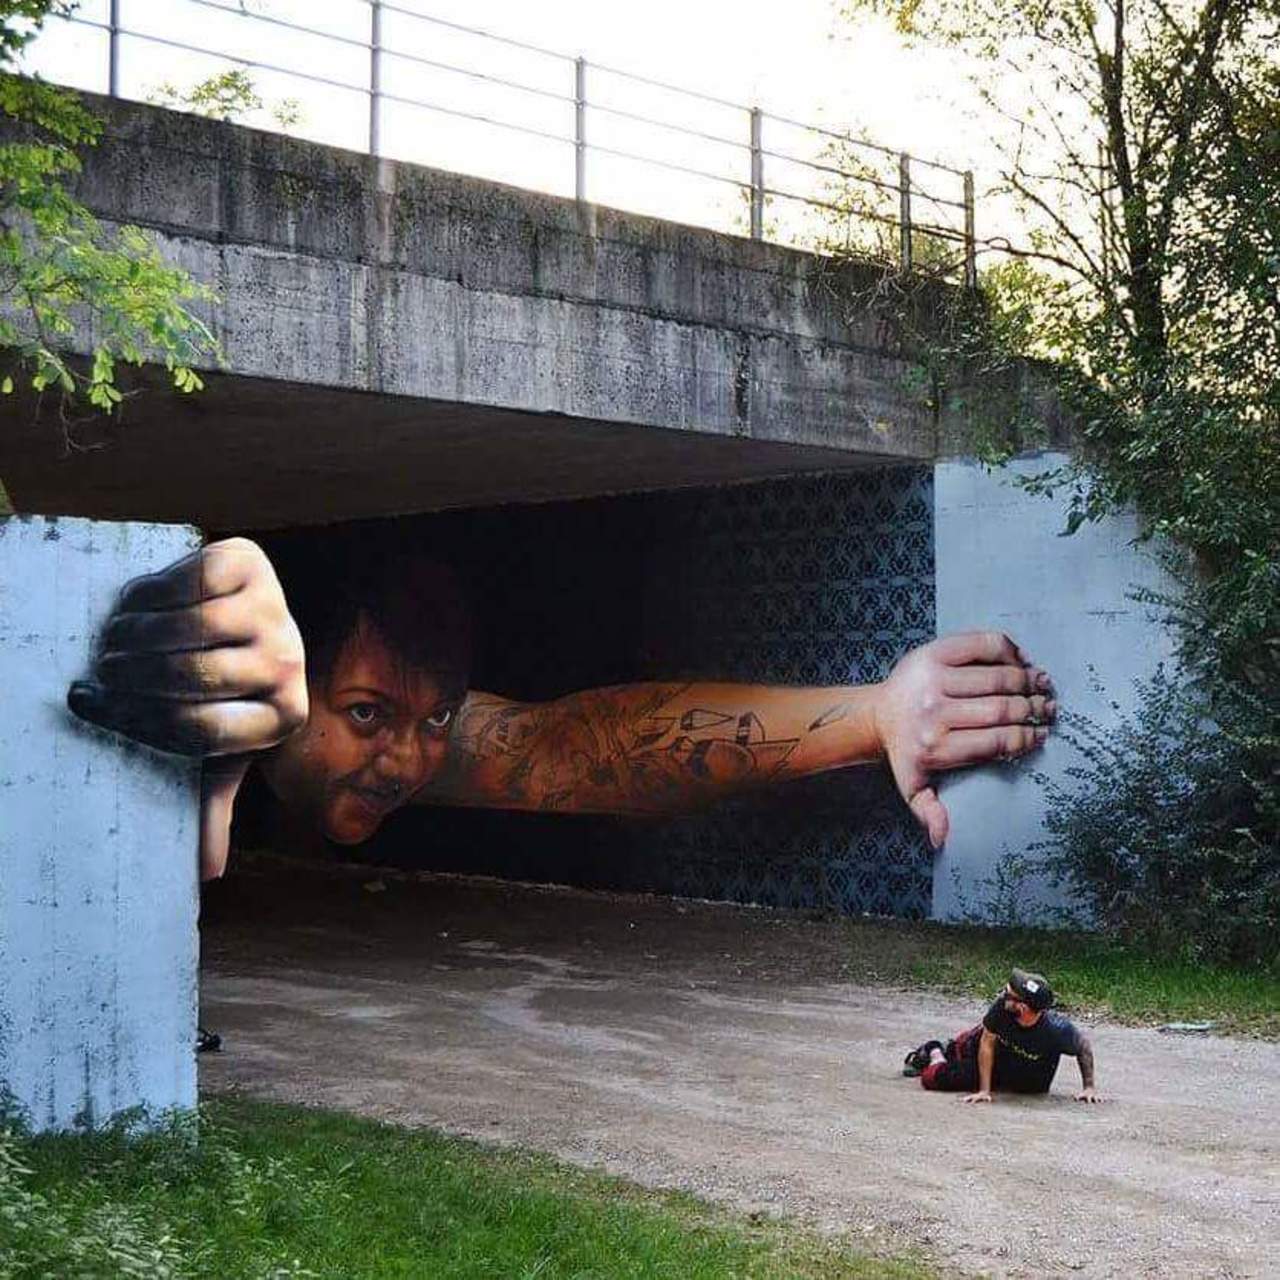 Amazing street art by Cheone . . . #art #artists #artlovers #streetart #streetartists #muralart #graffiti #artistsnartlovers https://t.co/CjMwlPZrYX